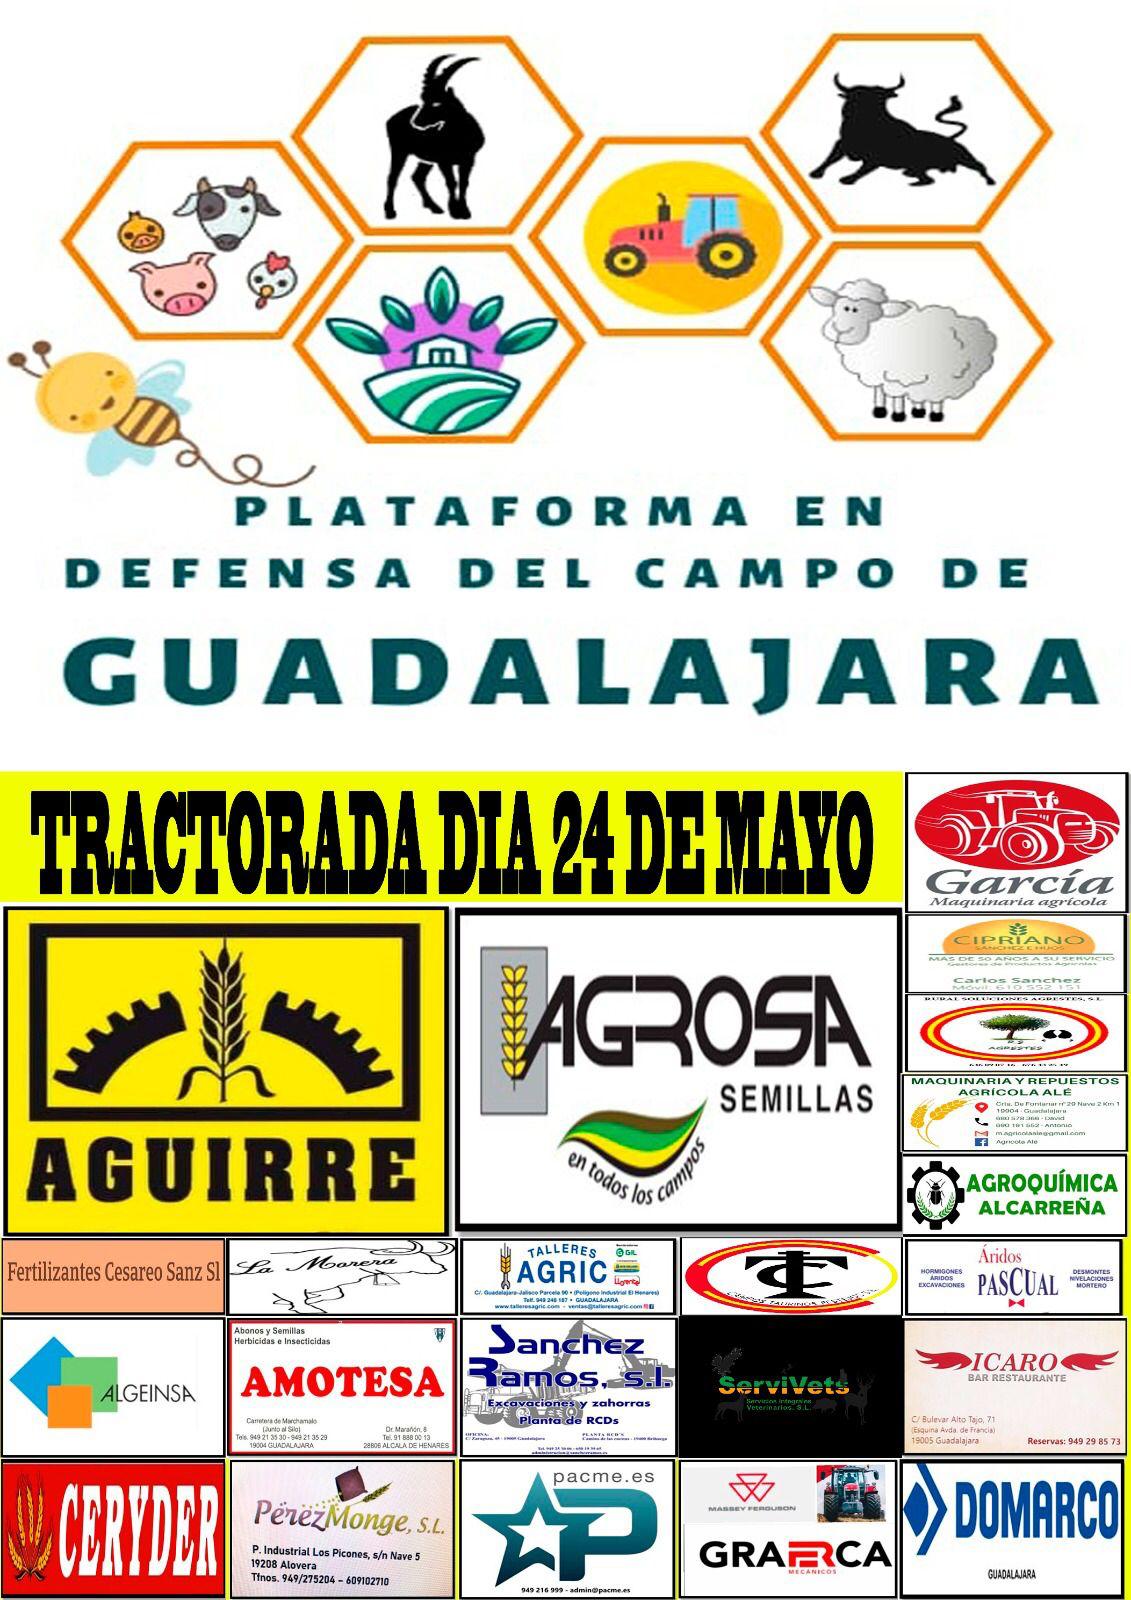 Plataforma en Defensa del Campo de Guadalajara: Convocatoria de Tractorada